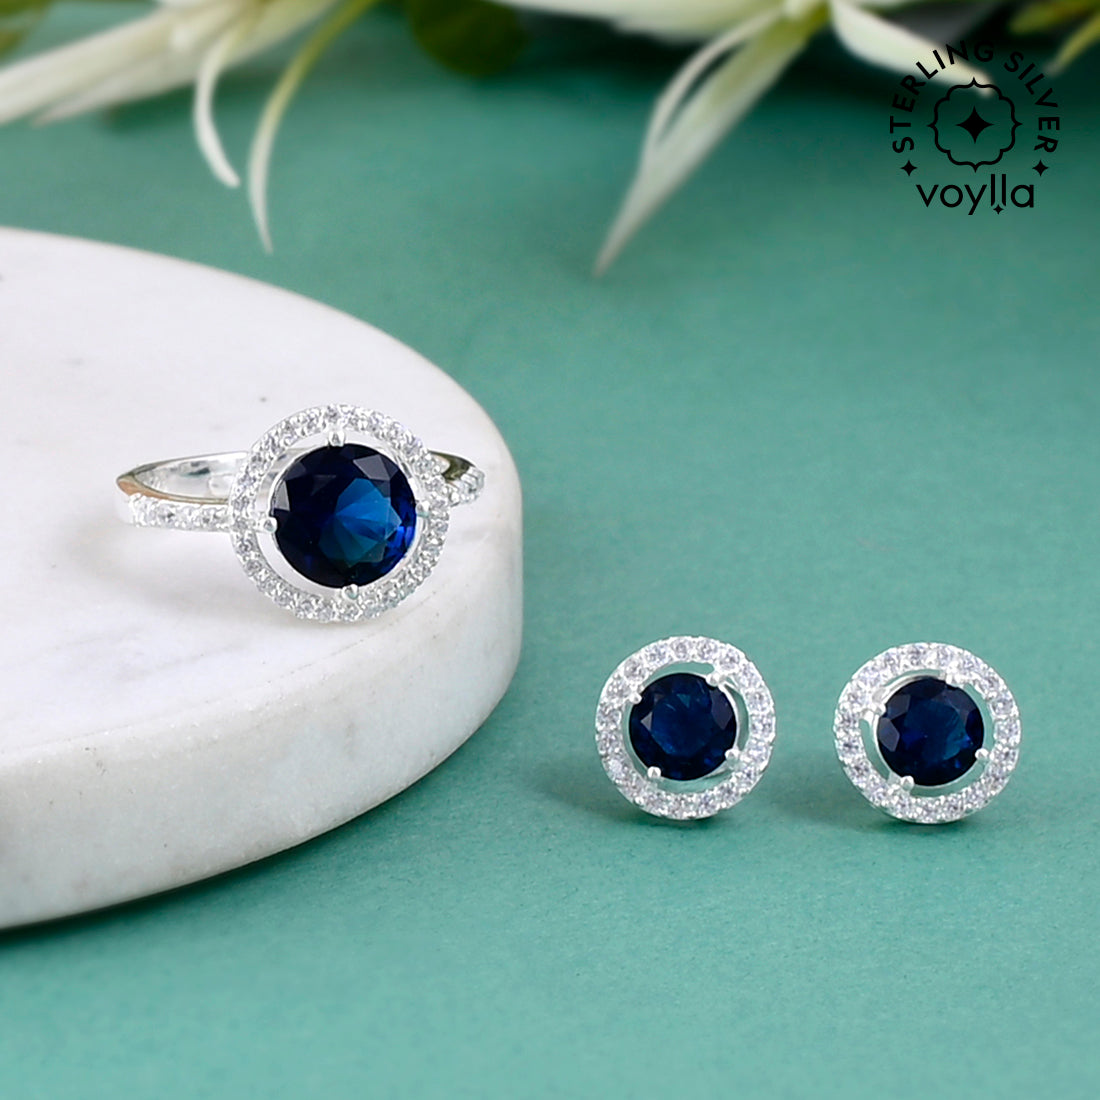 Buy Silver  Blue Earrings for Women by Giva Online  Ajiocom